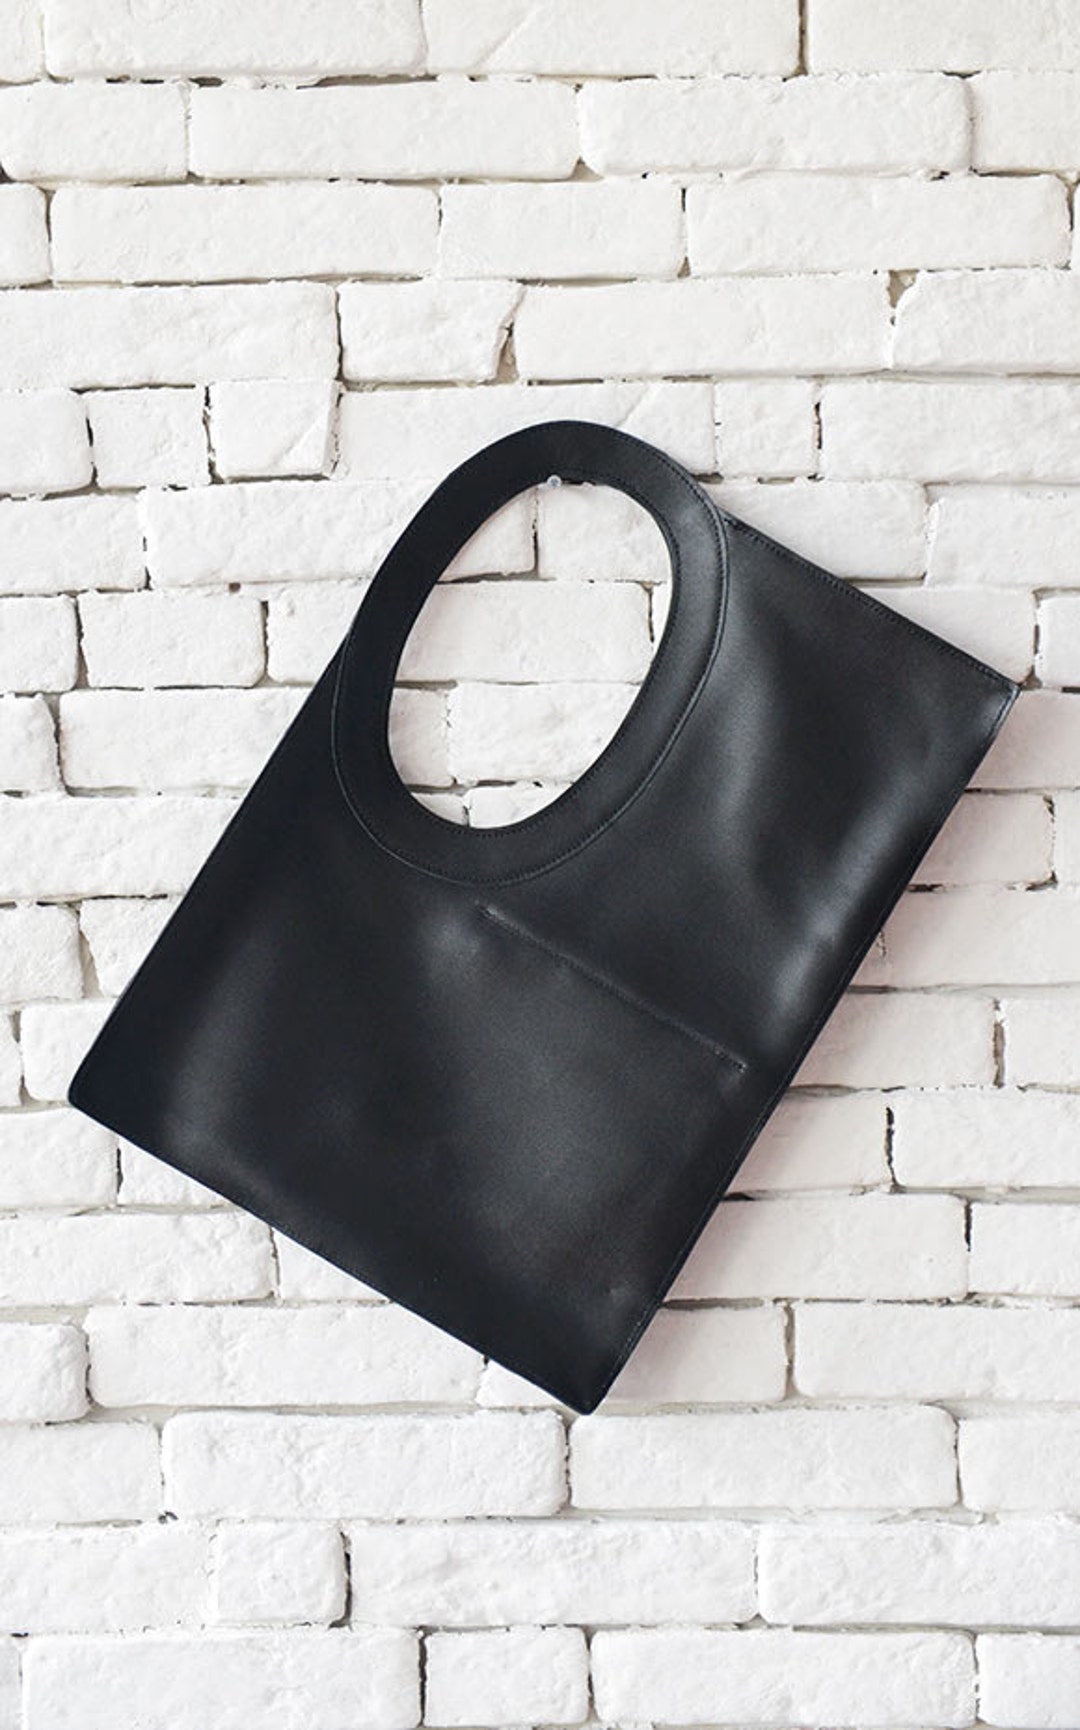 Tote Bag / Shoulder Bag / Leather Tote / Black Leather Bag / - Etsy